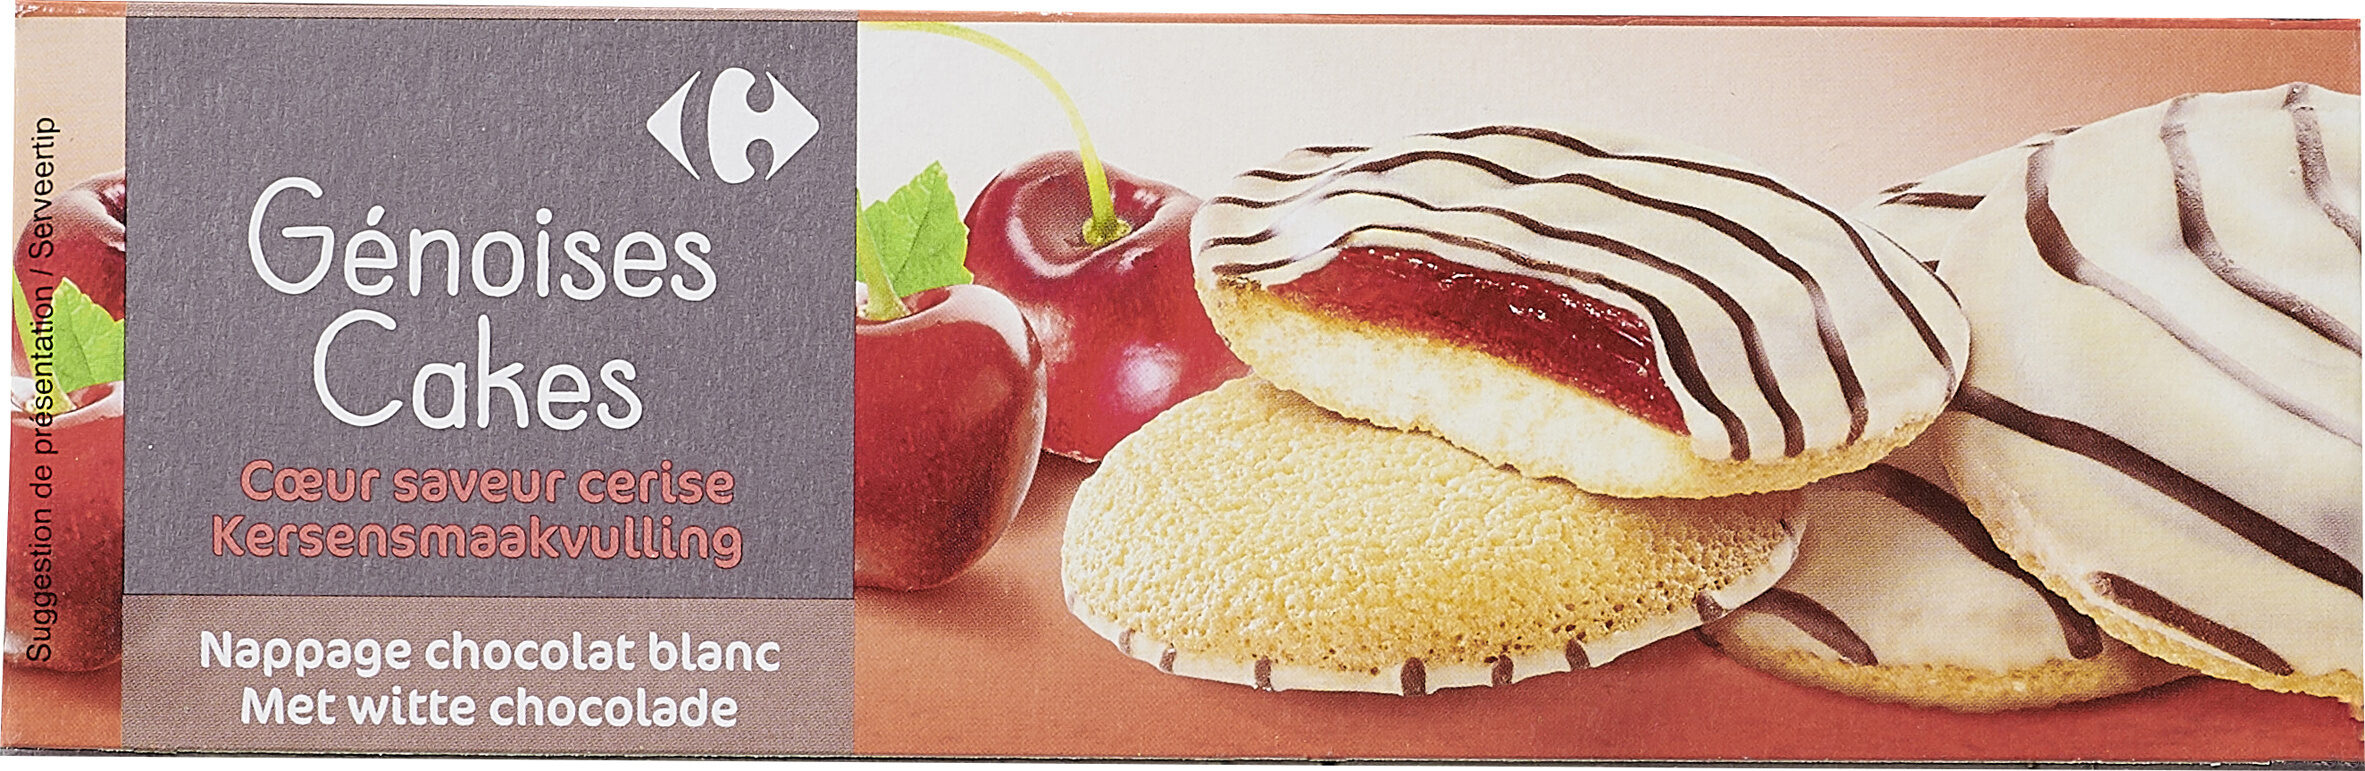 Genoises cakes saveur cerise - Producte - fr